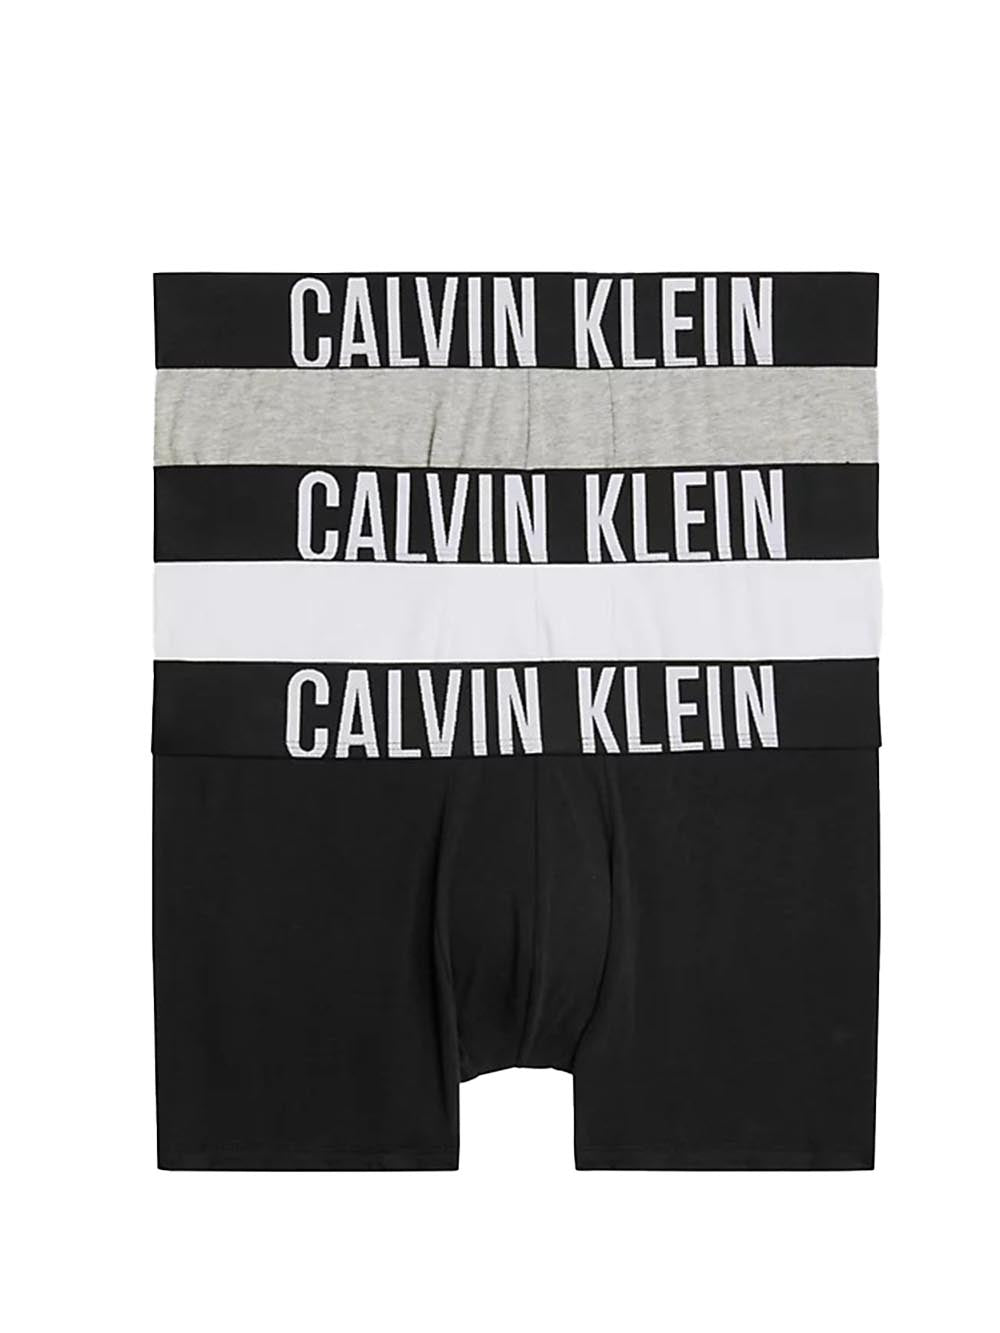 Calvin Klein Boxer Uomo 000nb3608a Multicolor